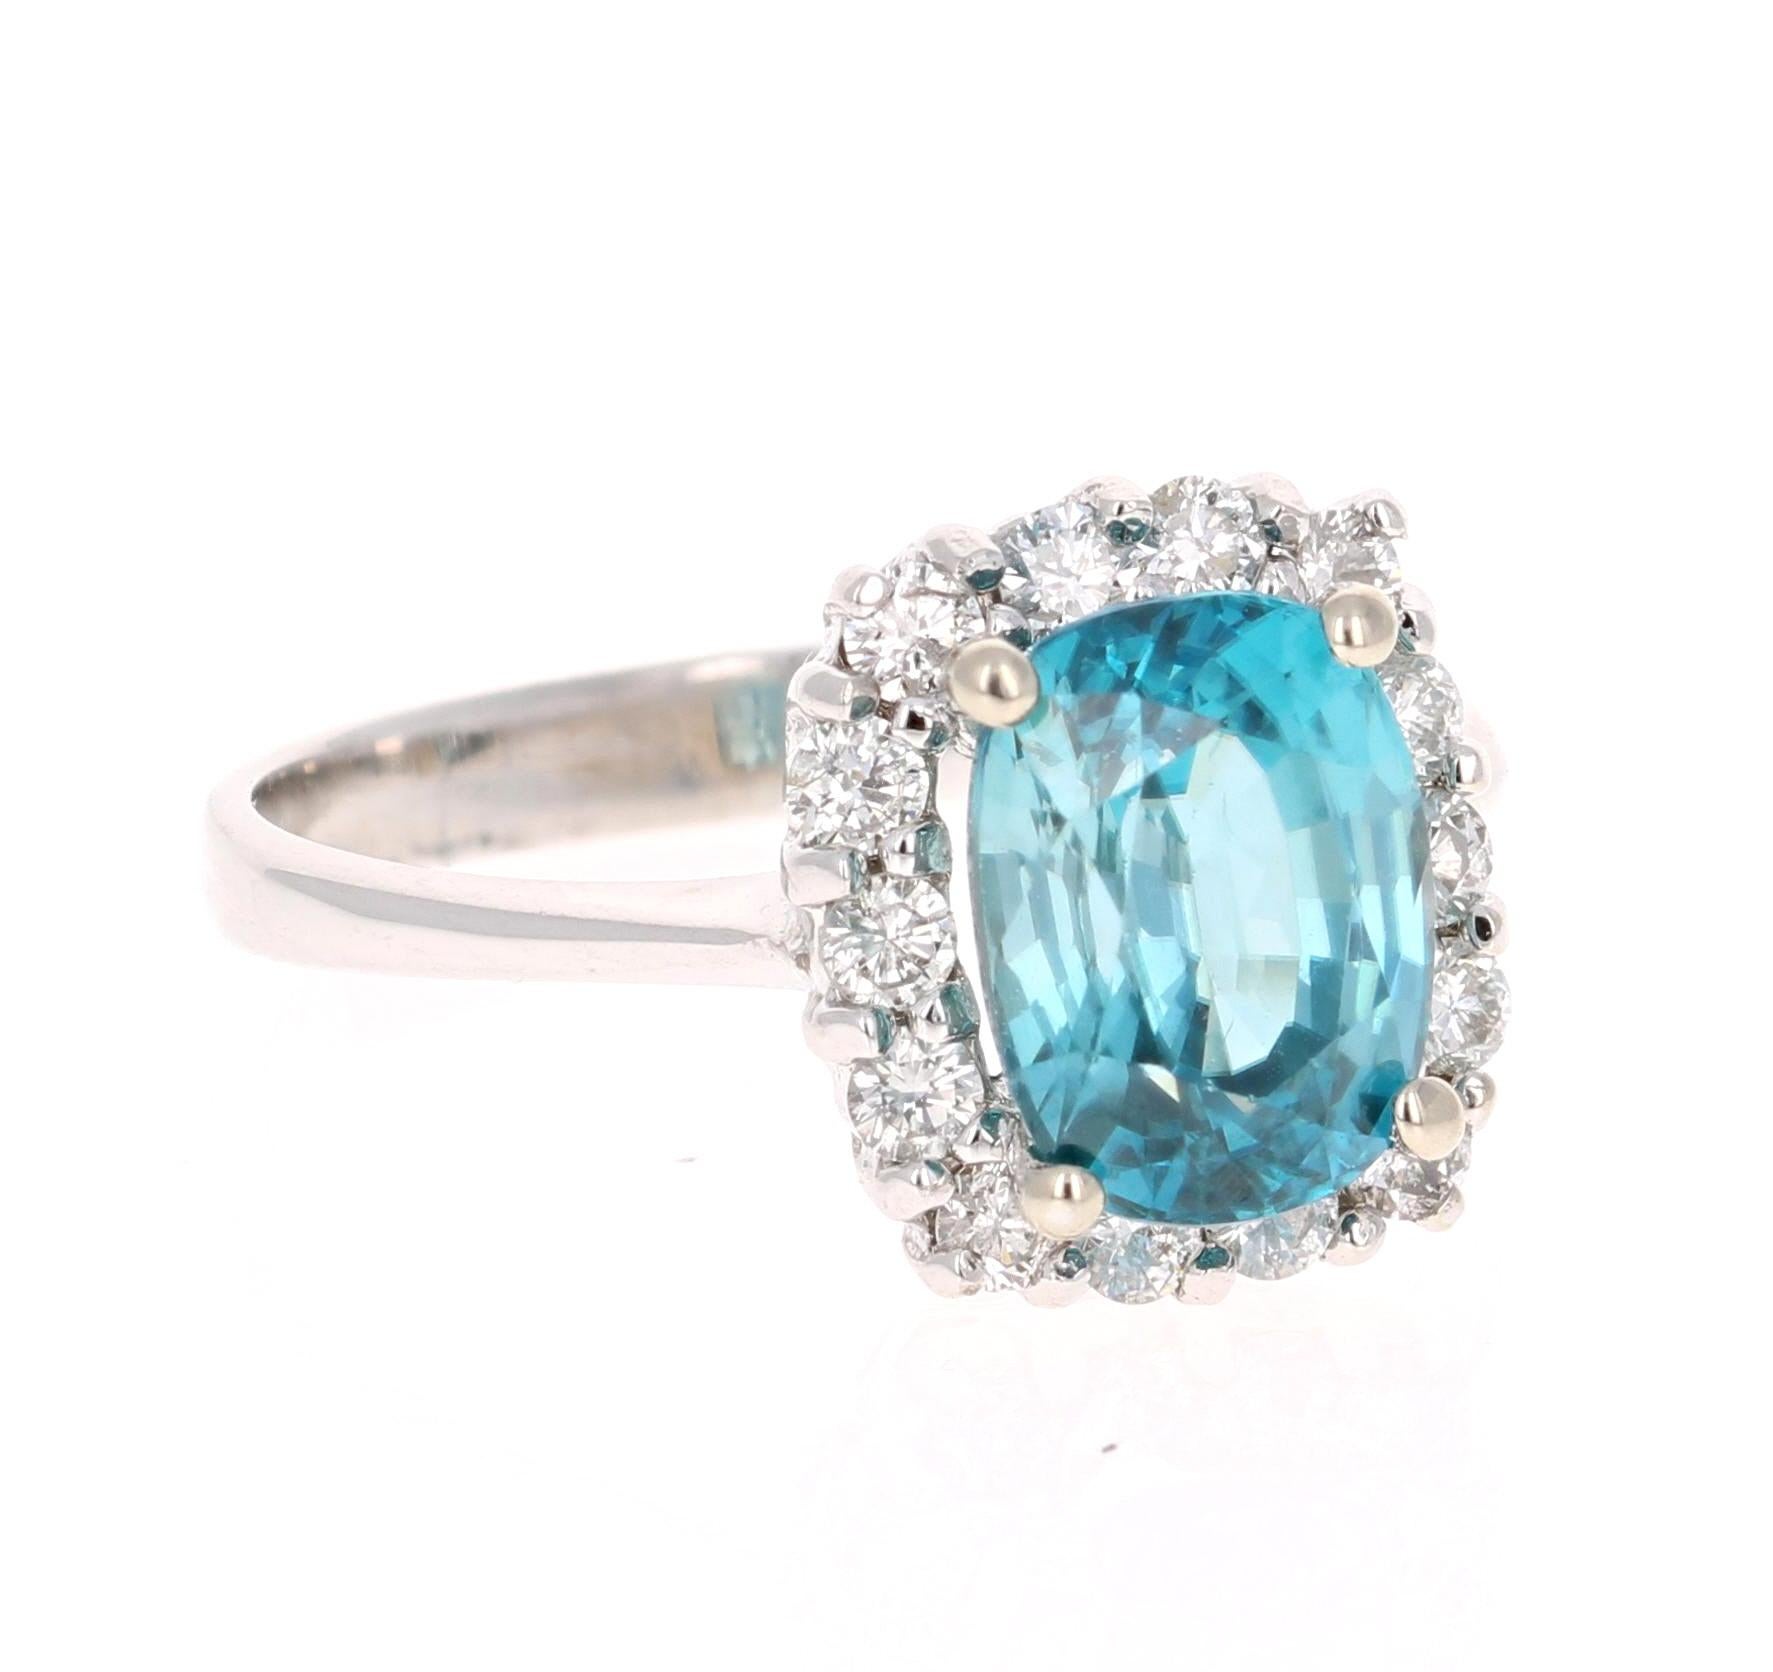 Ein schöner Ring mit blauem Zirkon und Diamant, der ein schöner Verlobungsring oder einfach ein Alltagsring sein kann!
Blauer Zirkon ist ein Naturstein, der hauptsächlich in Sri Lanka, Myanmar und Australien abgebaut wird.  
Dieser Ring hat einen